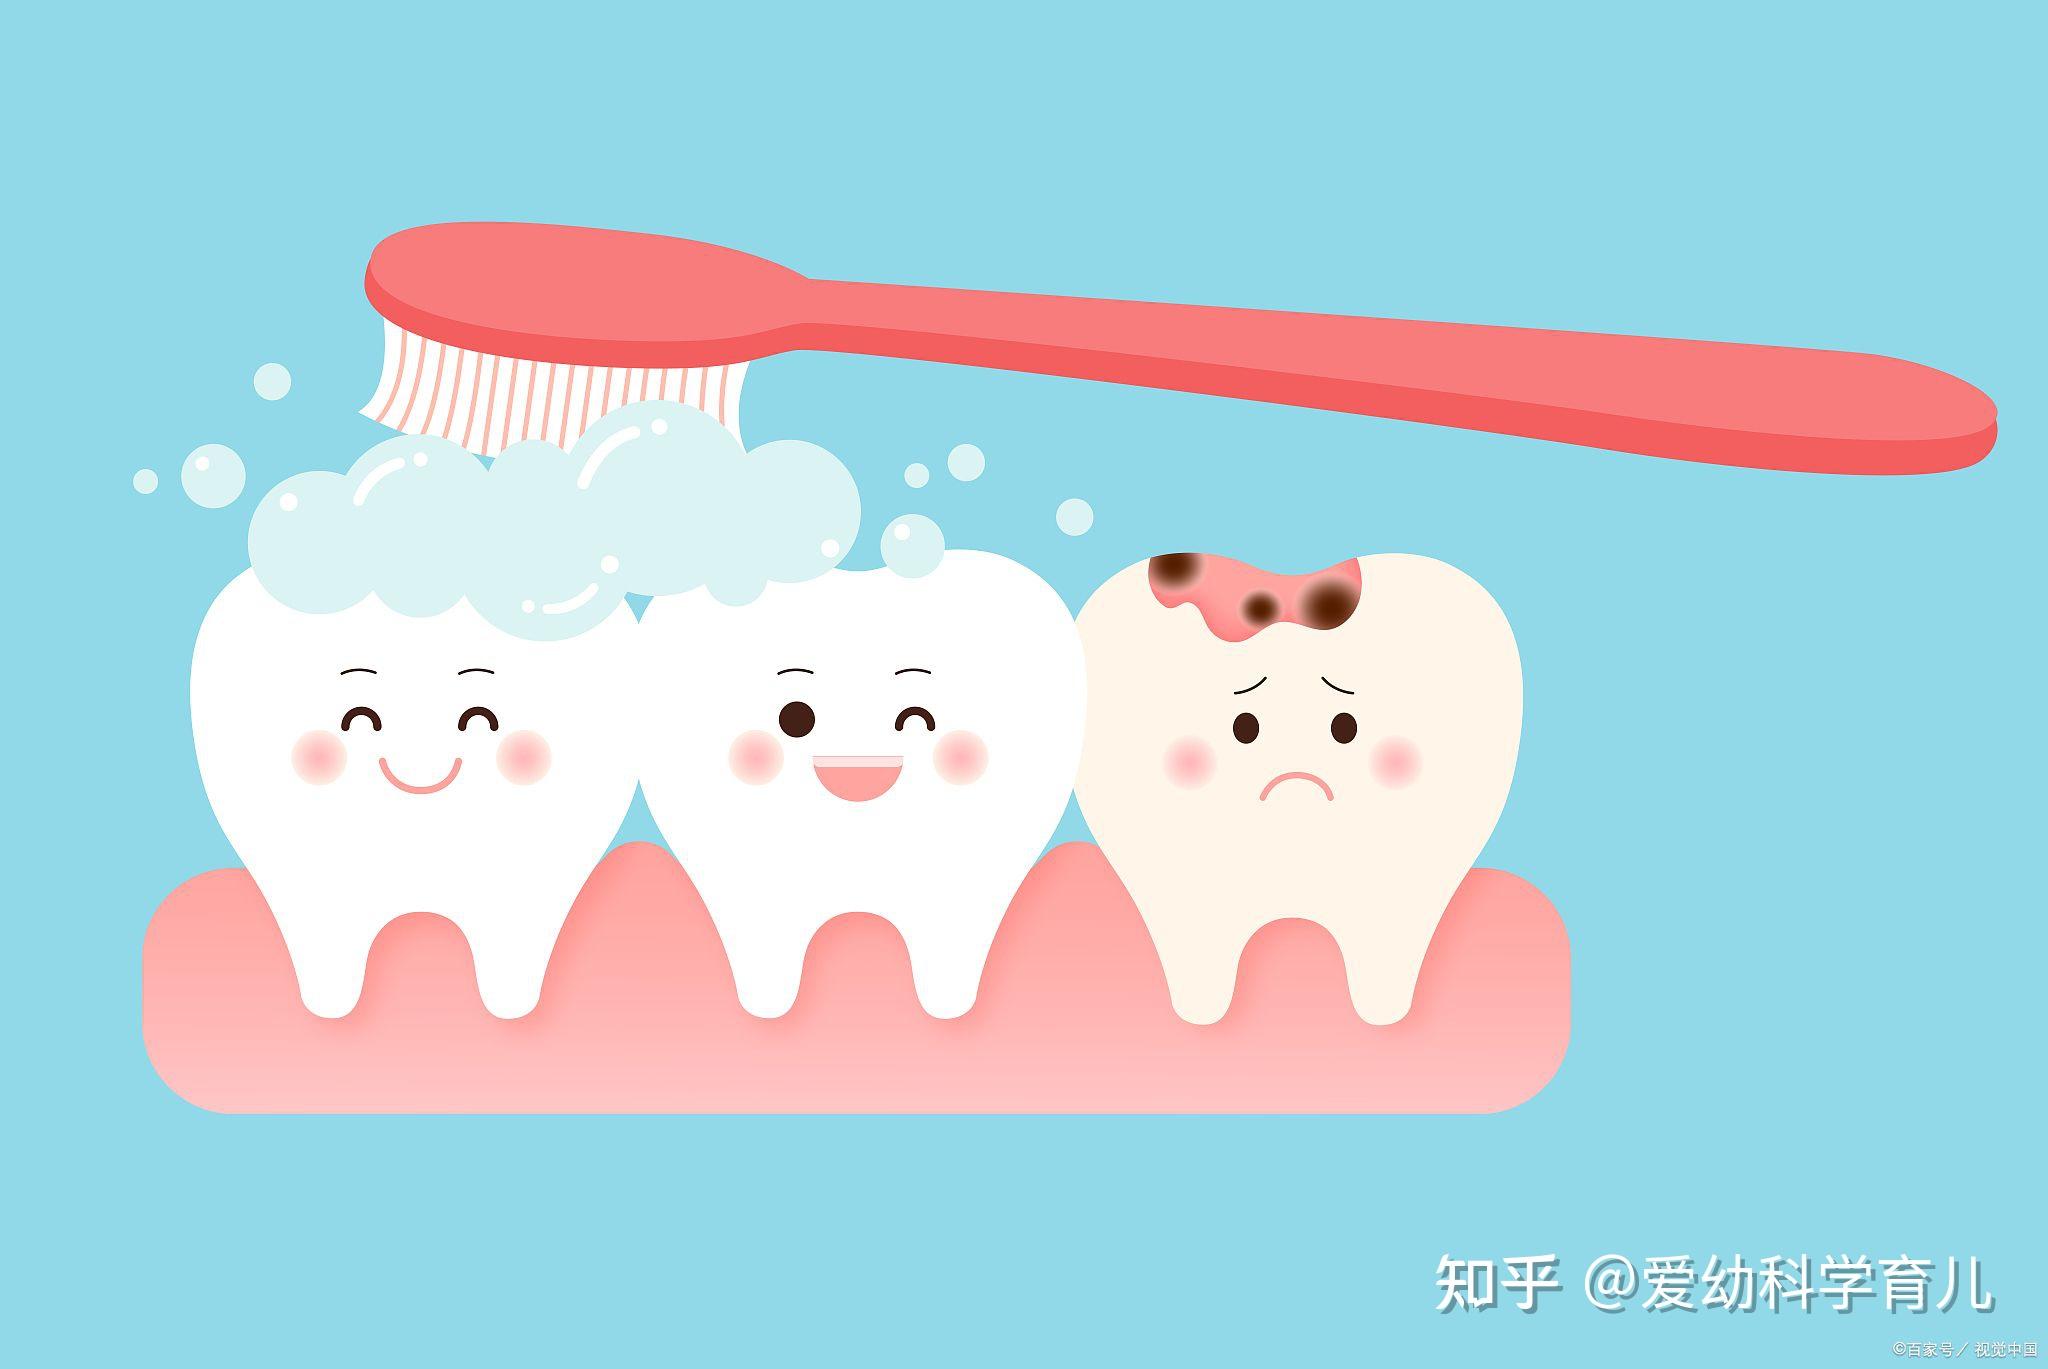 刷牙的重要性/牙菌斑染色剂自检/牙菌斑这种可恨的小玩意 - 知乎